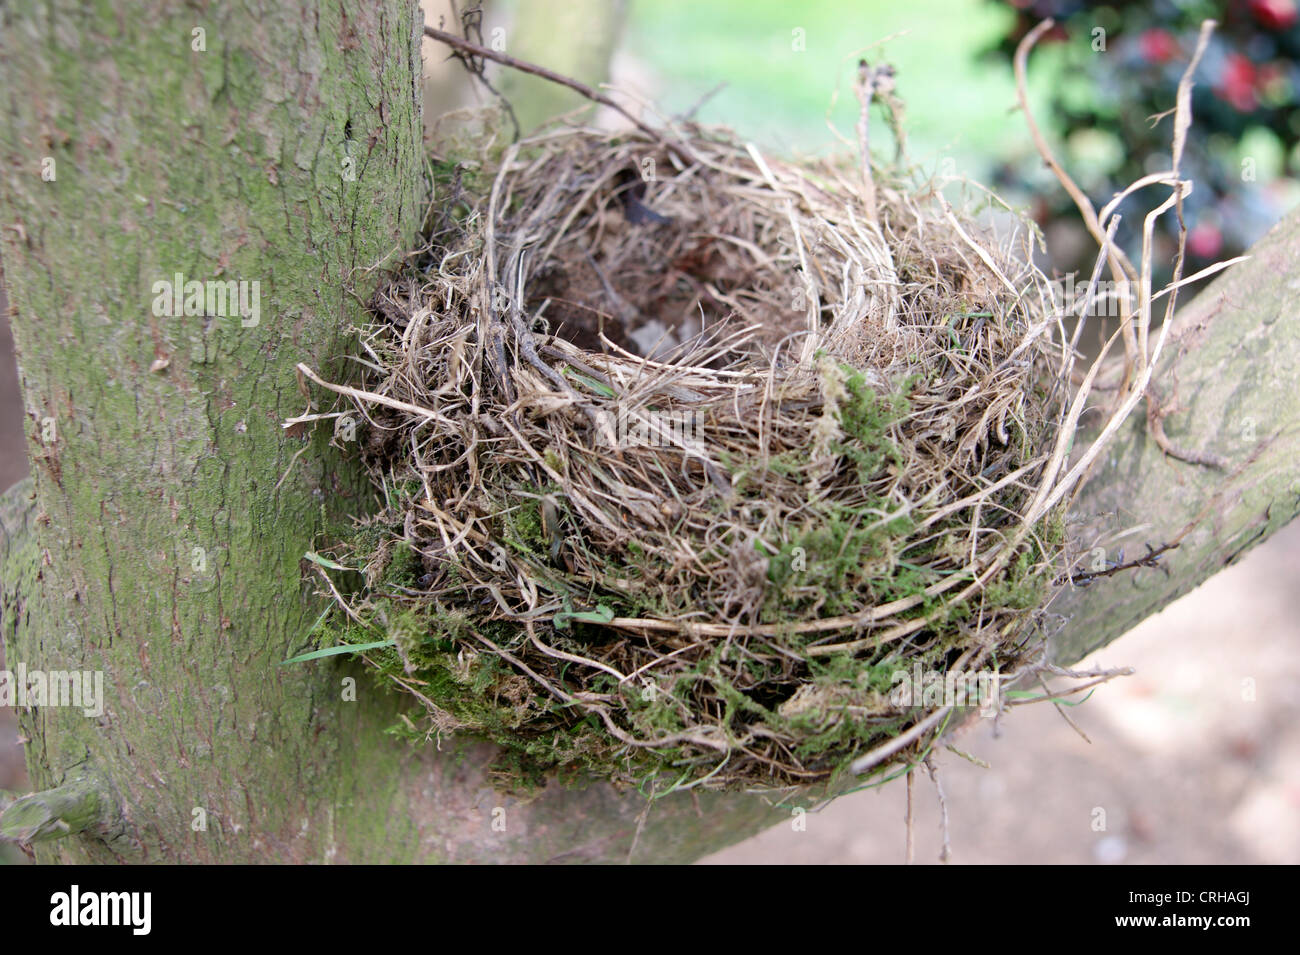 Abbandonata vuoto nido di uccelli in un albero (potrebbe simboleggiare la perdita della pensione / risparmio / investimento) Foto Stock